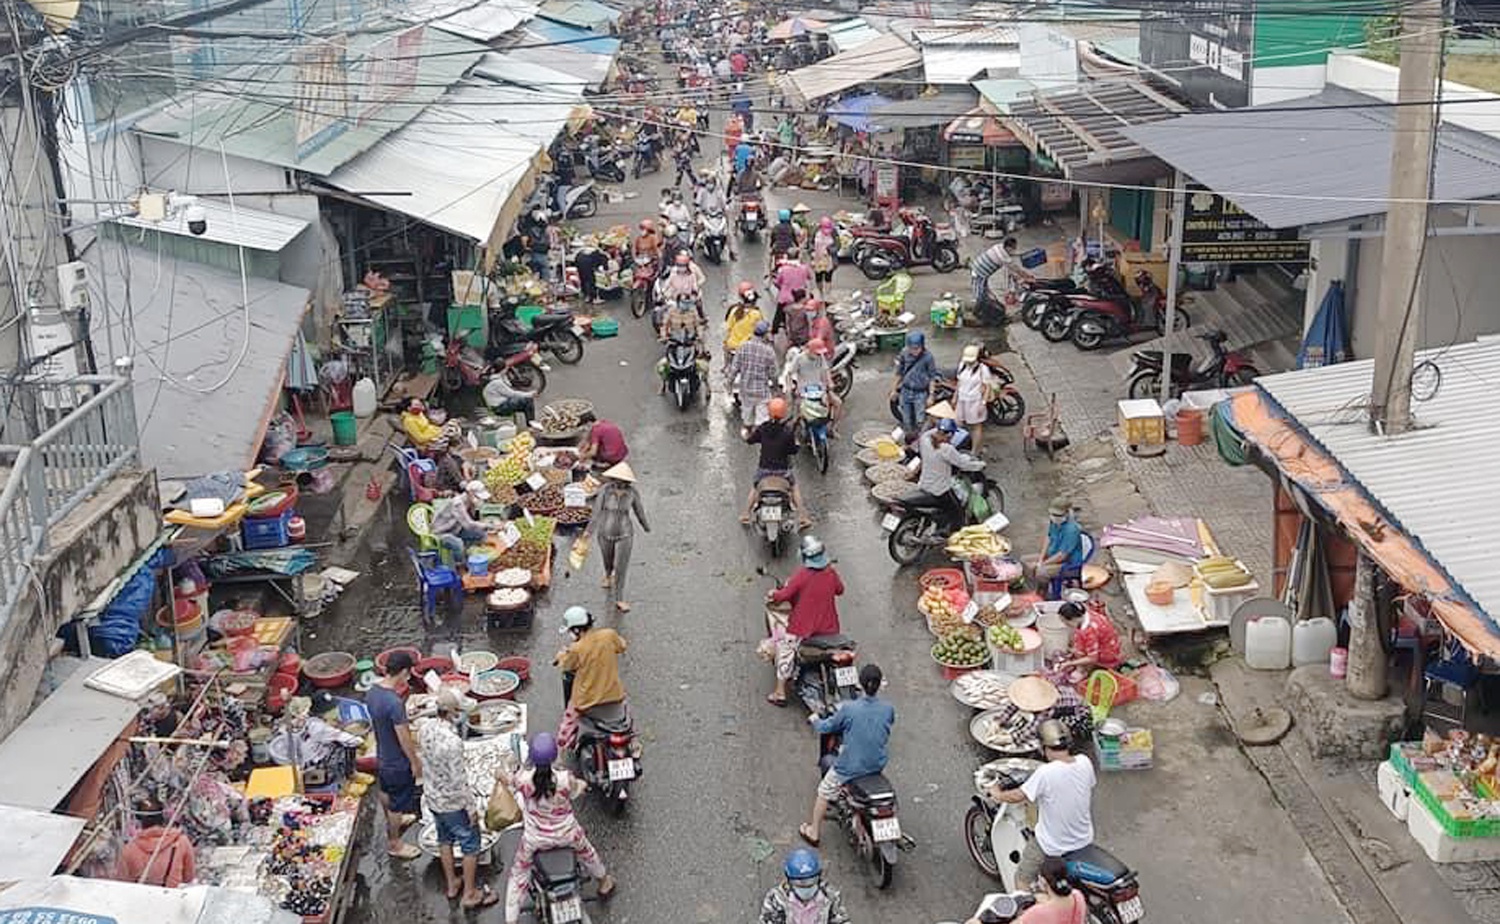 Nguoi mien Tay do xo mua hang anh 2  - cho_phu_quoc - Người dân miền Tây đổ xô đi chợ, giá thực phẩm tăng vọt